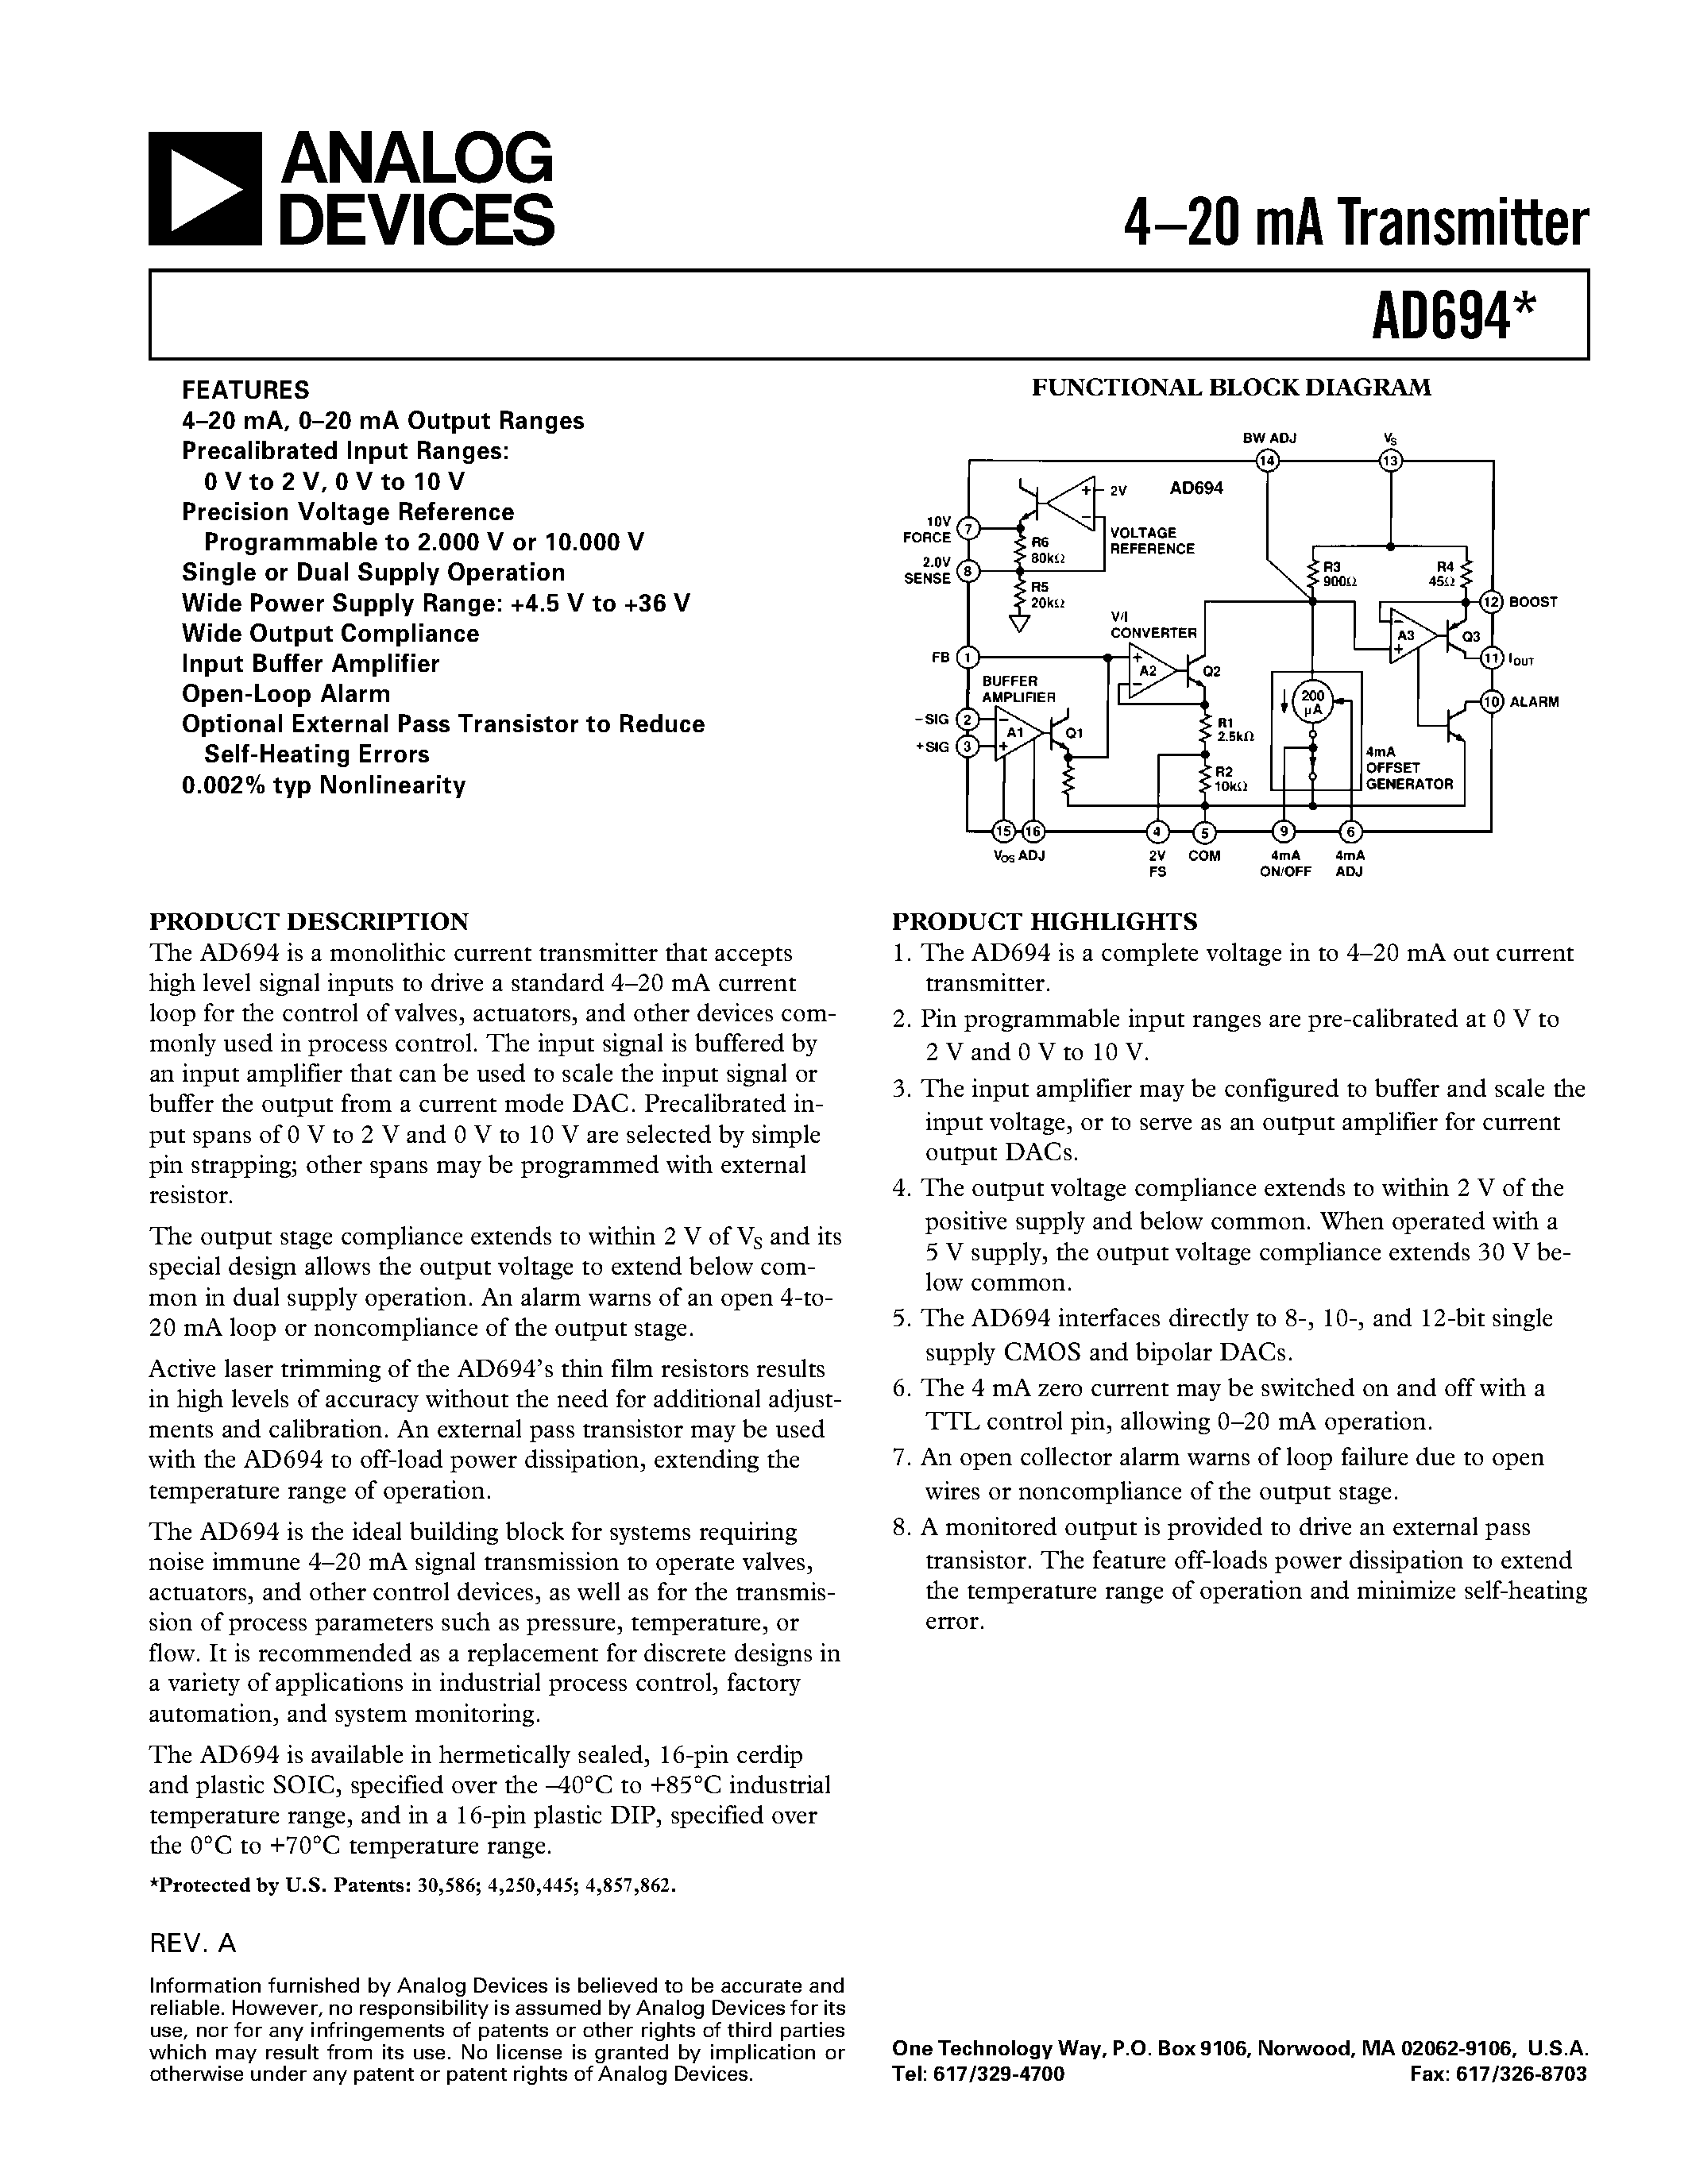 Даташит AD694JN - 4.20 mA Transmitter страница 1